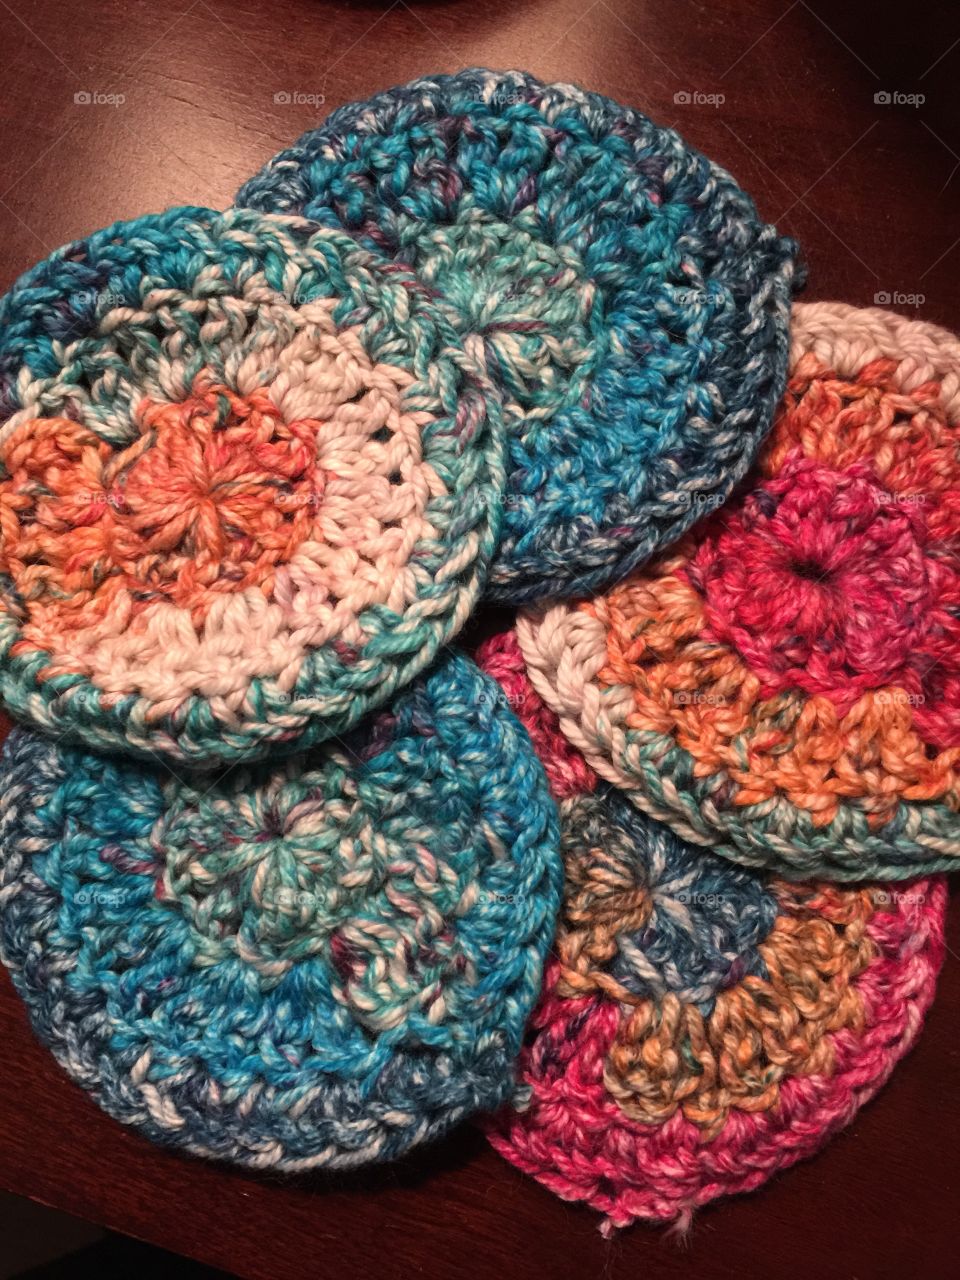 Handmade cotton crochet make up rounds 